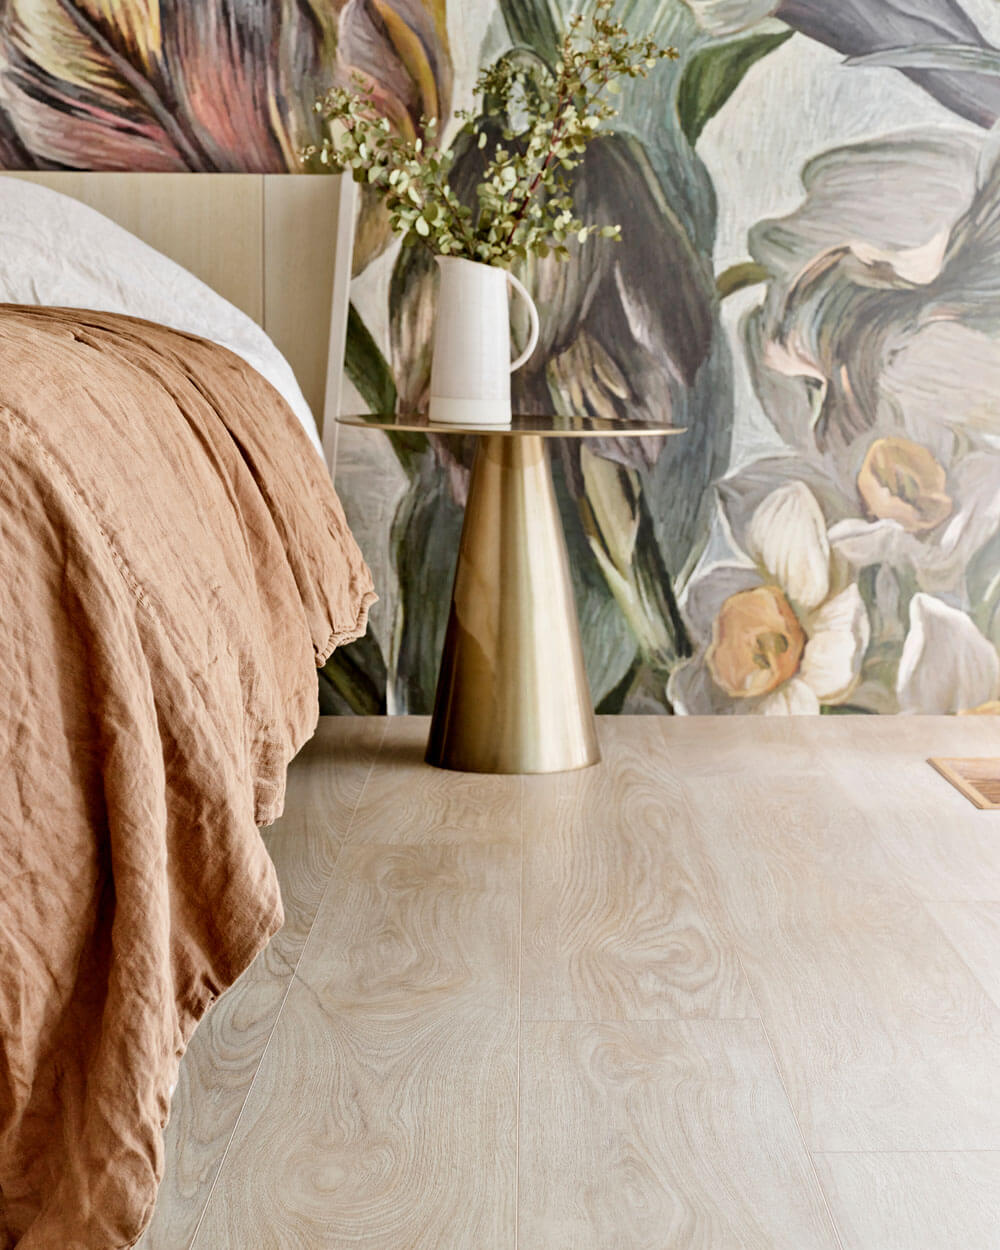 Interieur van een slaapkamer met een bed tegen een muur met bloemenbehang. De vloer die getoond wordt is de Moduleo LayRed Laurel Oak 51230 Embossed luxe pvc vloer.